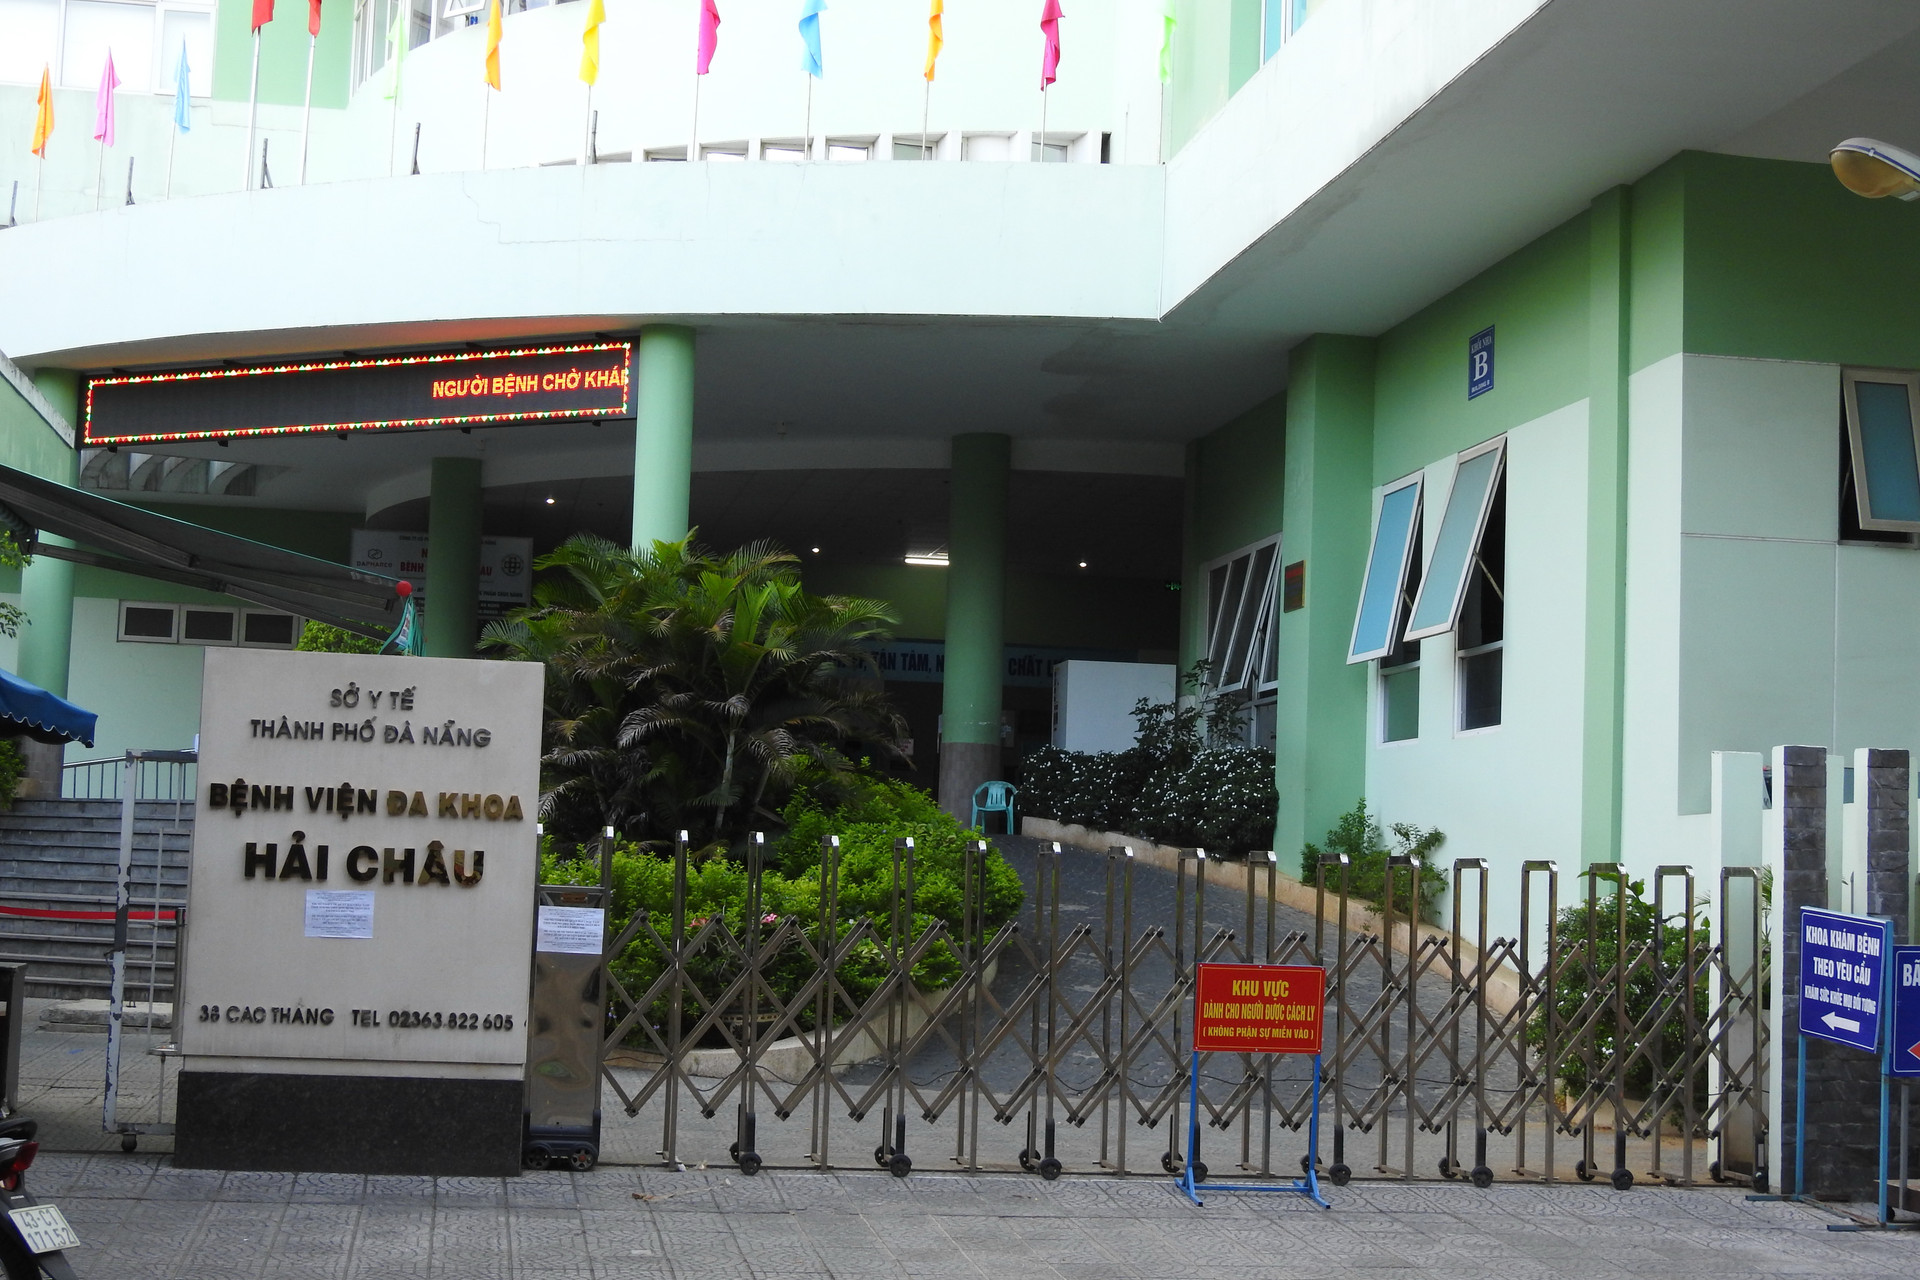 Trung tâm y tế (Bệnh viện đa khoa) quận Hải Châu (Đà Nẵng) bị phong tỏa, cách ly. Ảnh B. Nguyên.